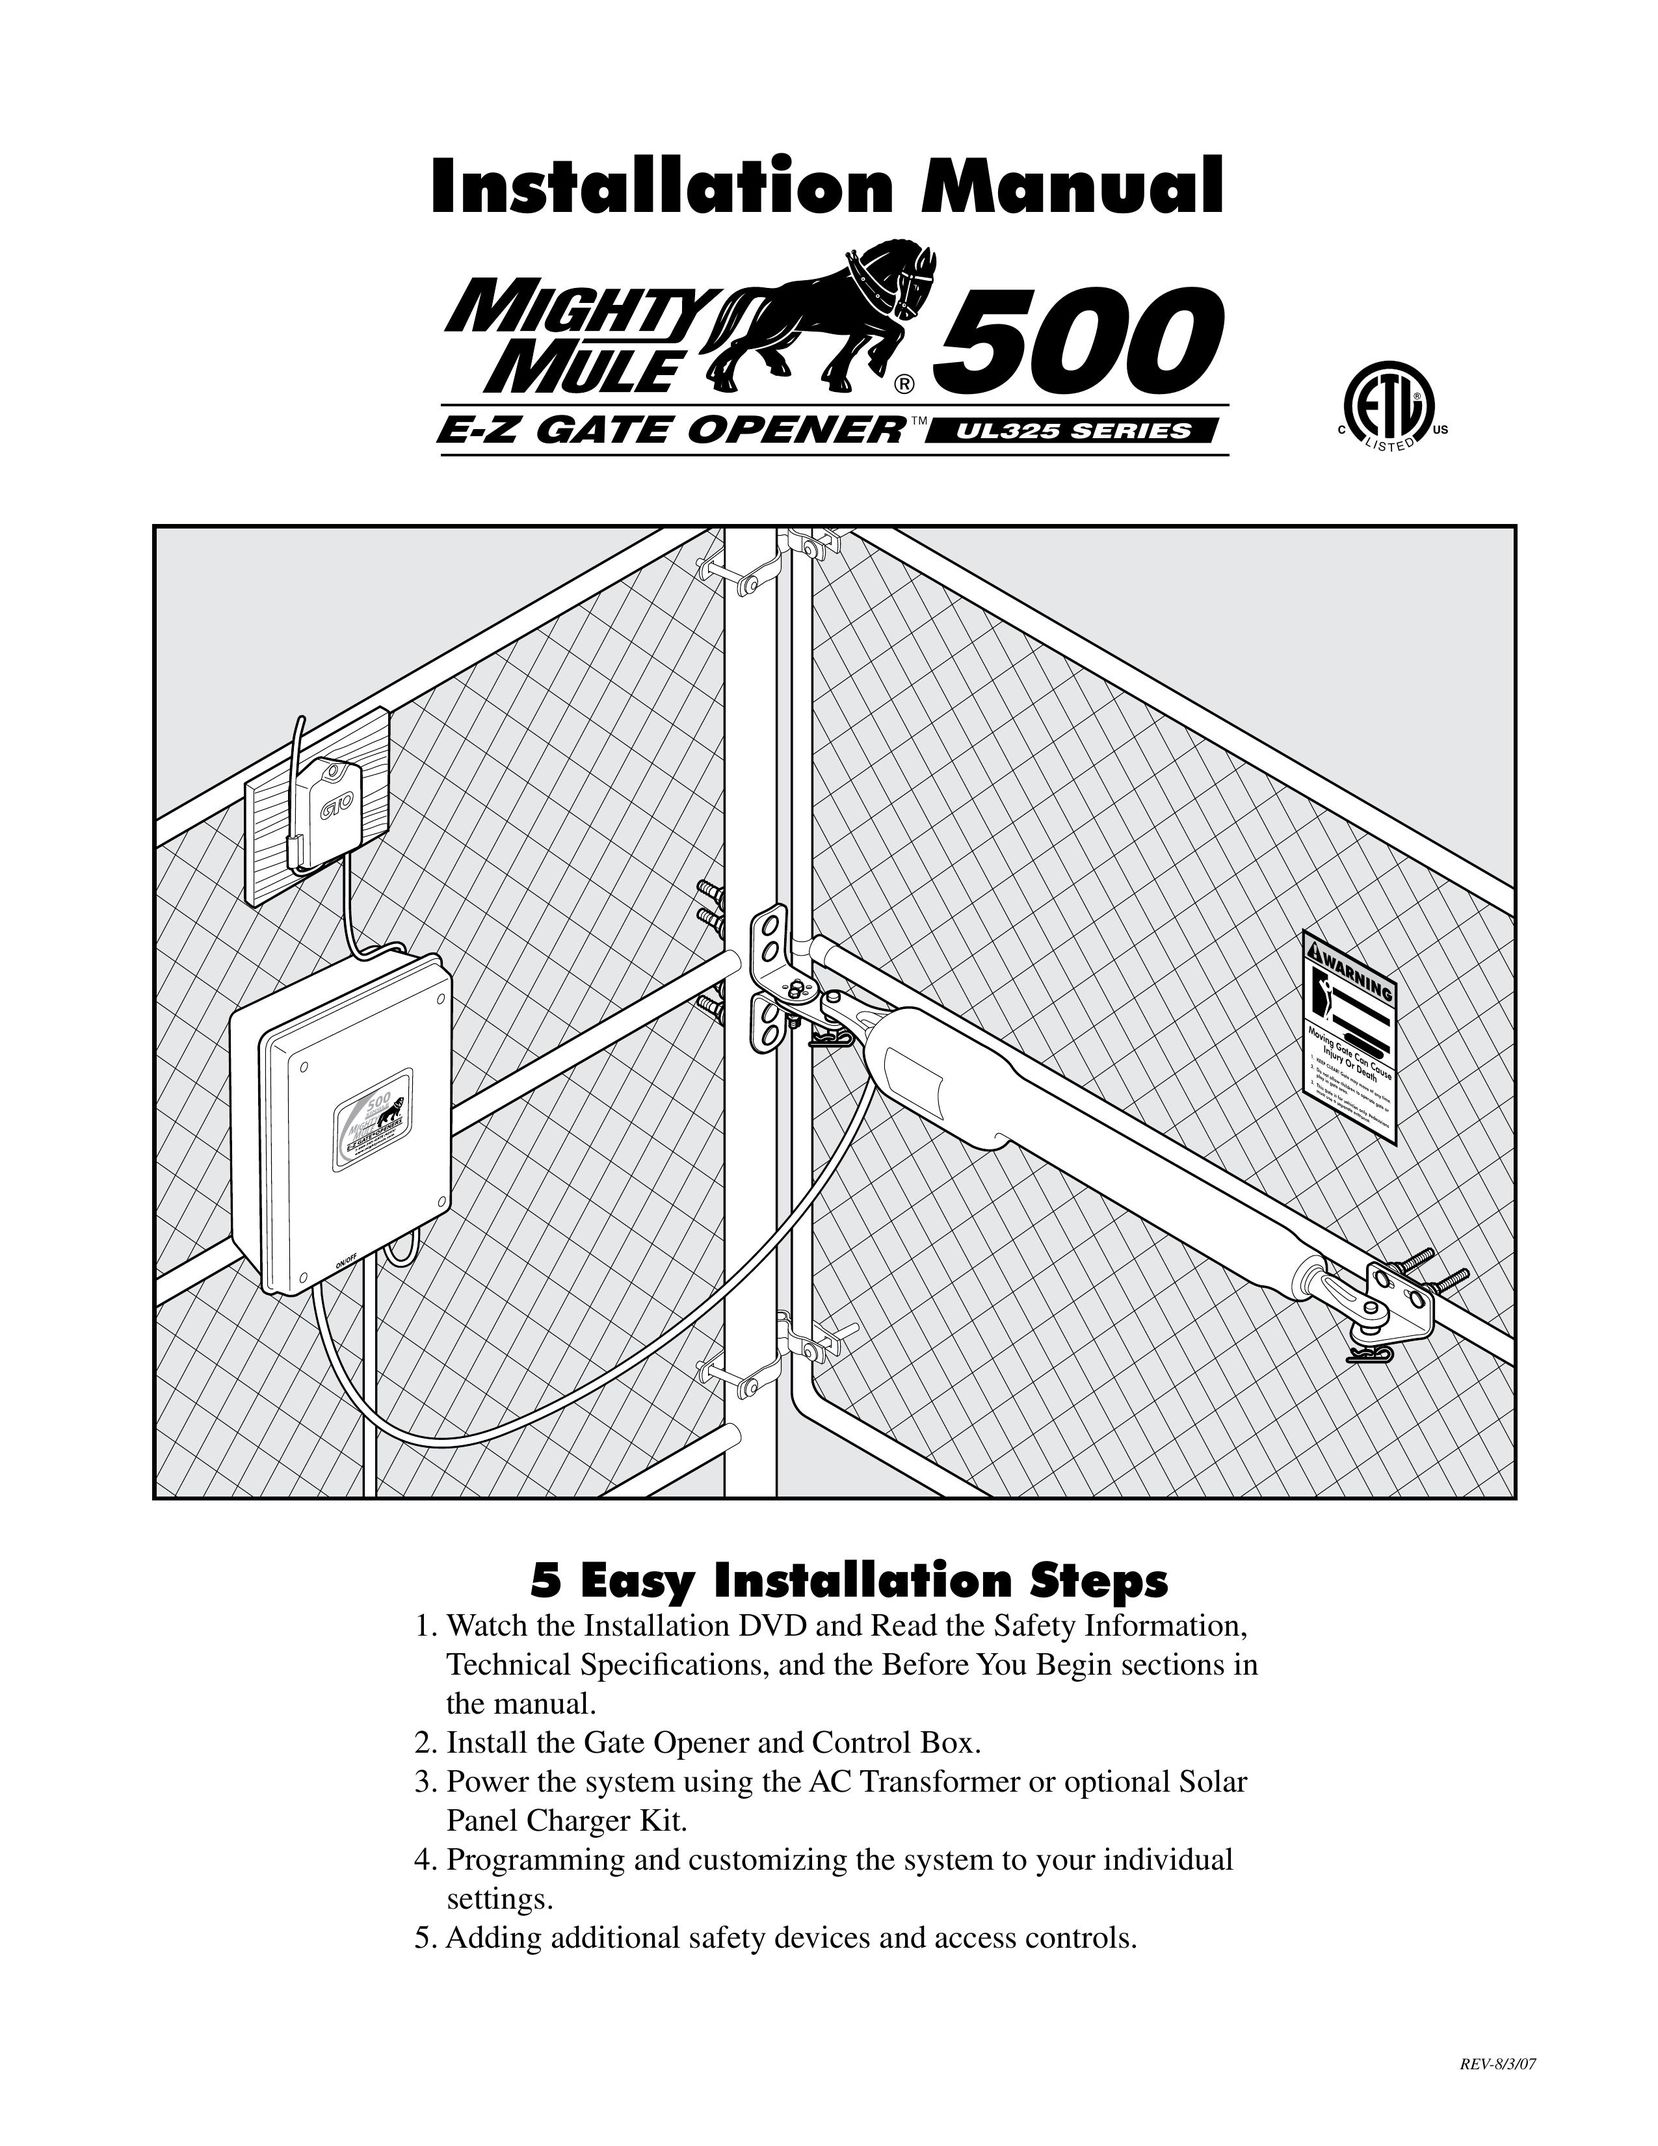 GTO UL325 SERIES Garage Door Opener User Manual